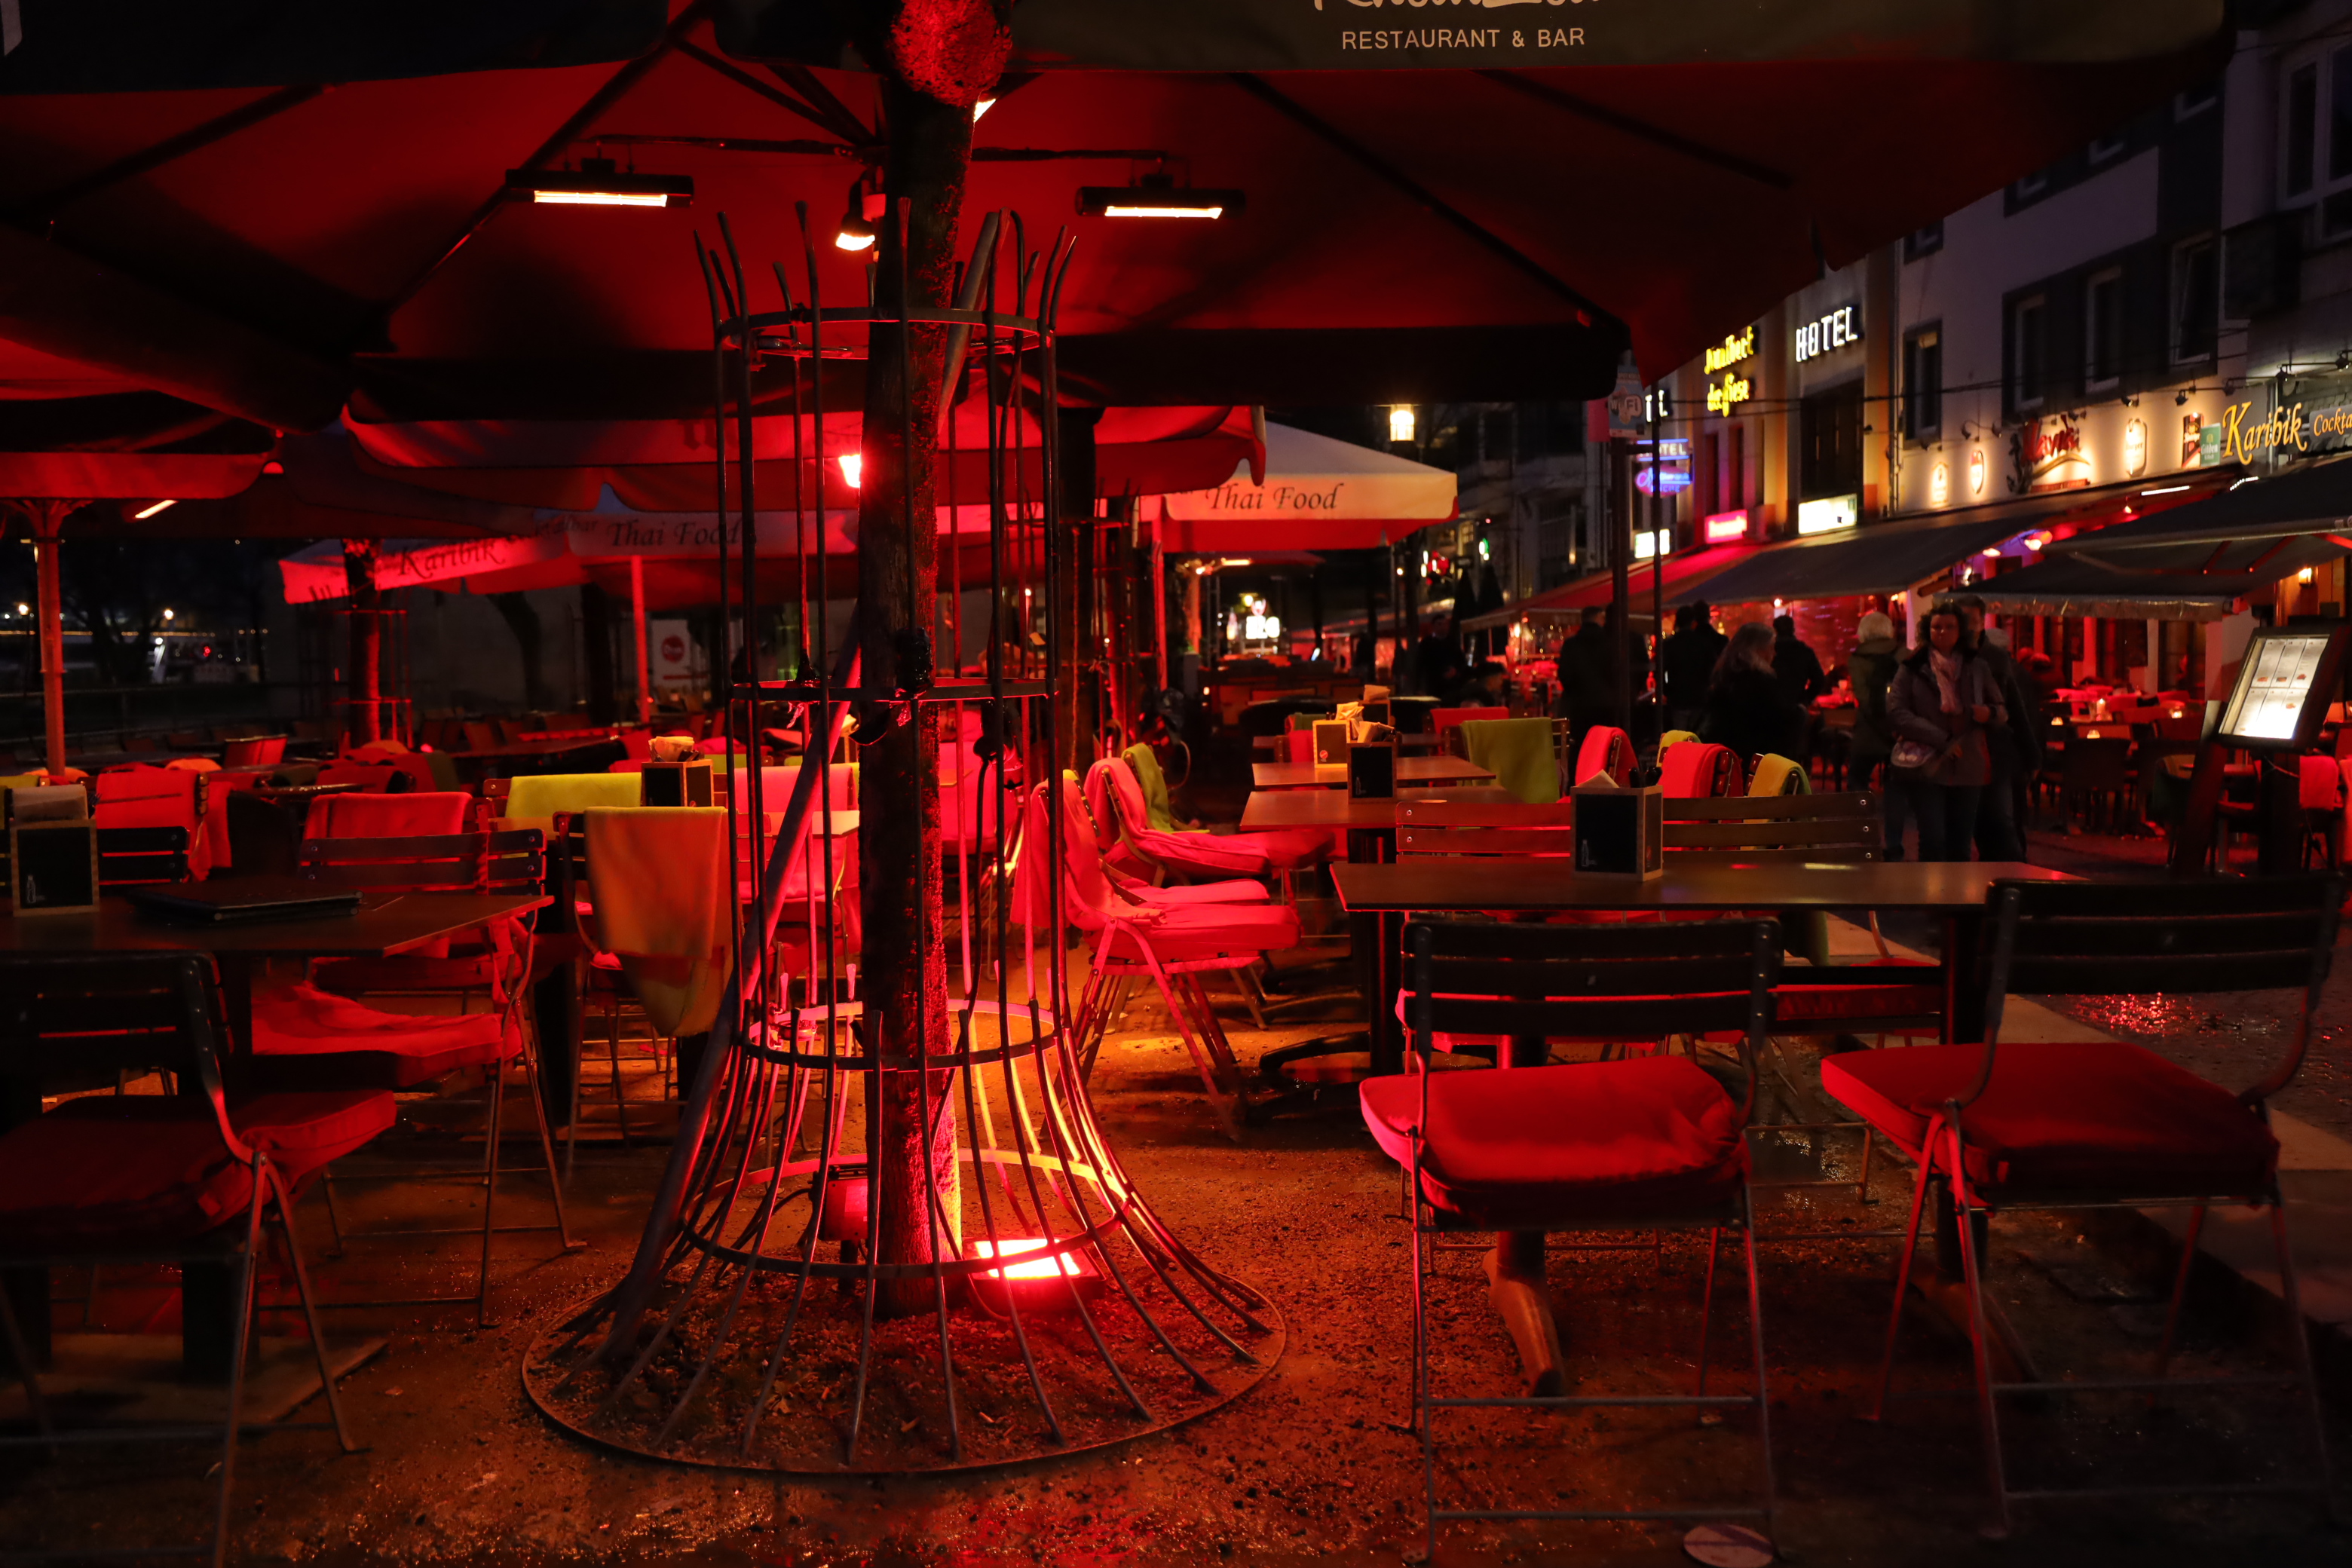 An dieser Stelle gewollt und naturgetreu eingefangen: Rotlicht in der Kölner Altstadt. Blende: 4.0, ISO 4000, Verschlusszeit 1/80s, Brennweite: 33mm